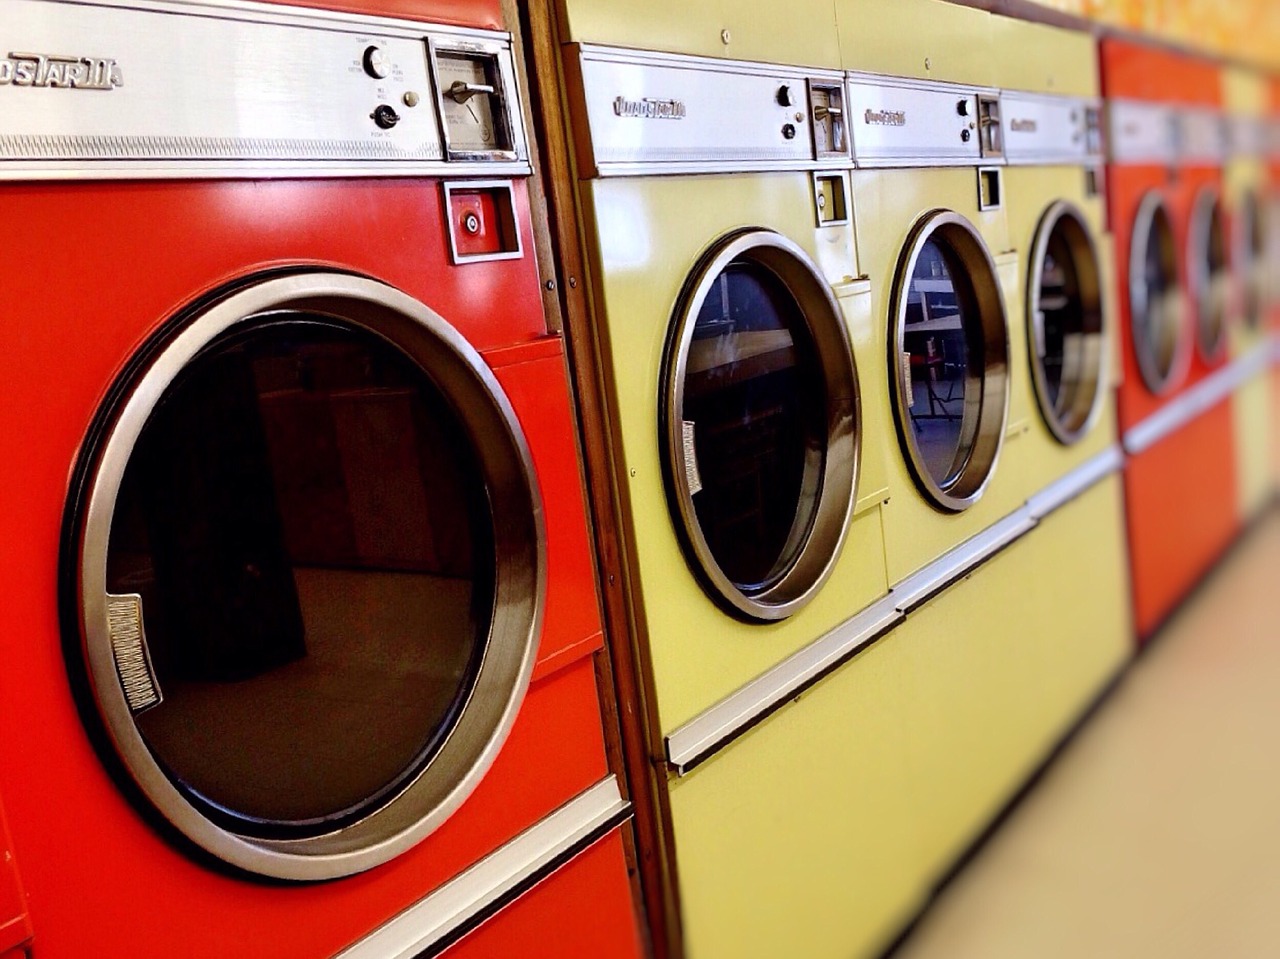 laundromat washer dryer free photo